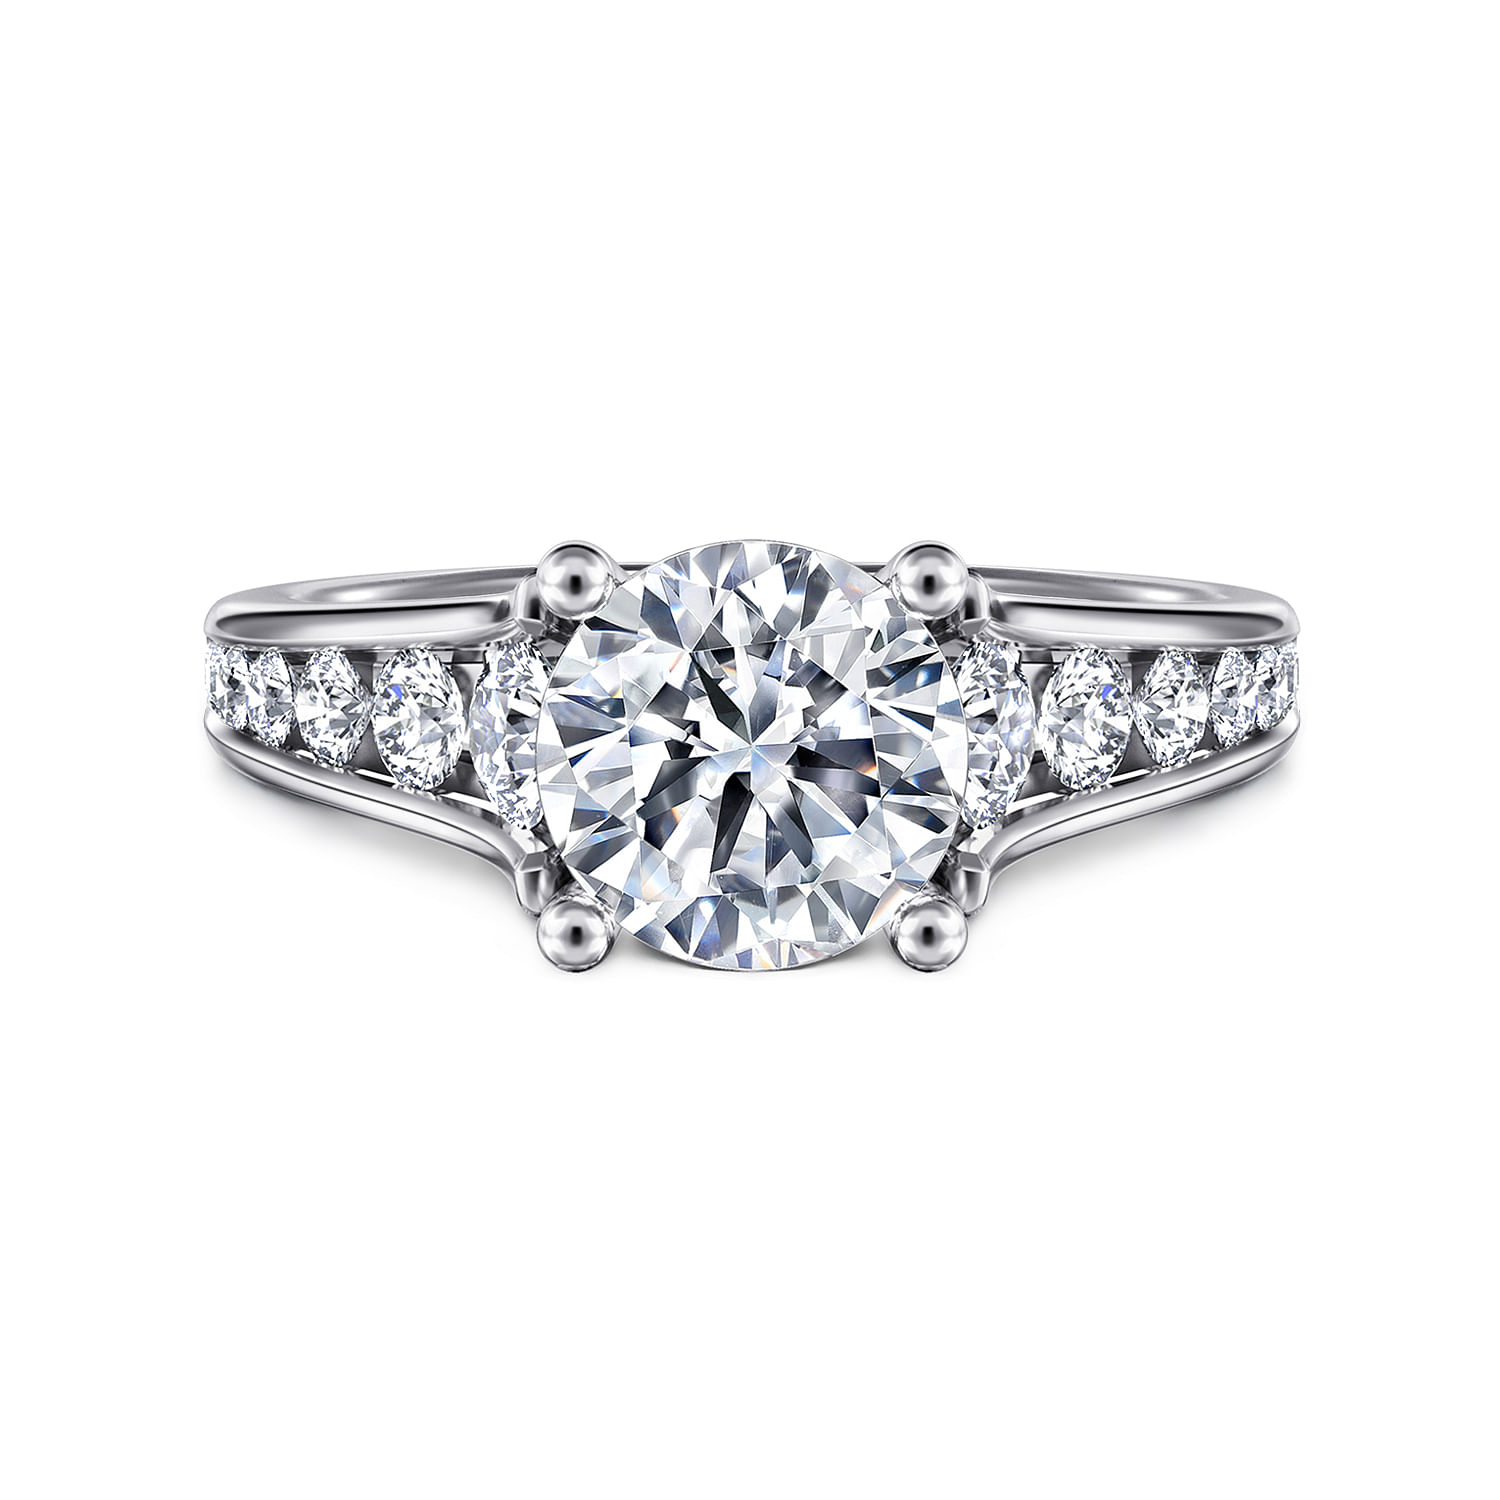 Aubrey---14K-White-Gold-Round-Diamond-Channel-Set-Engagement-Ring1